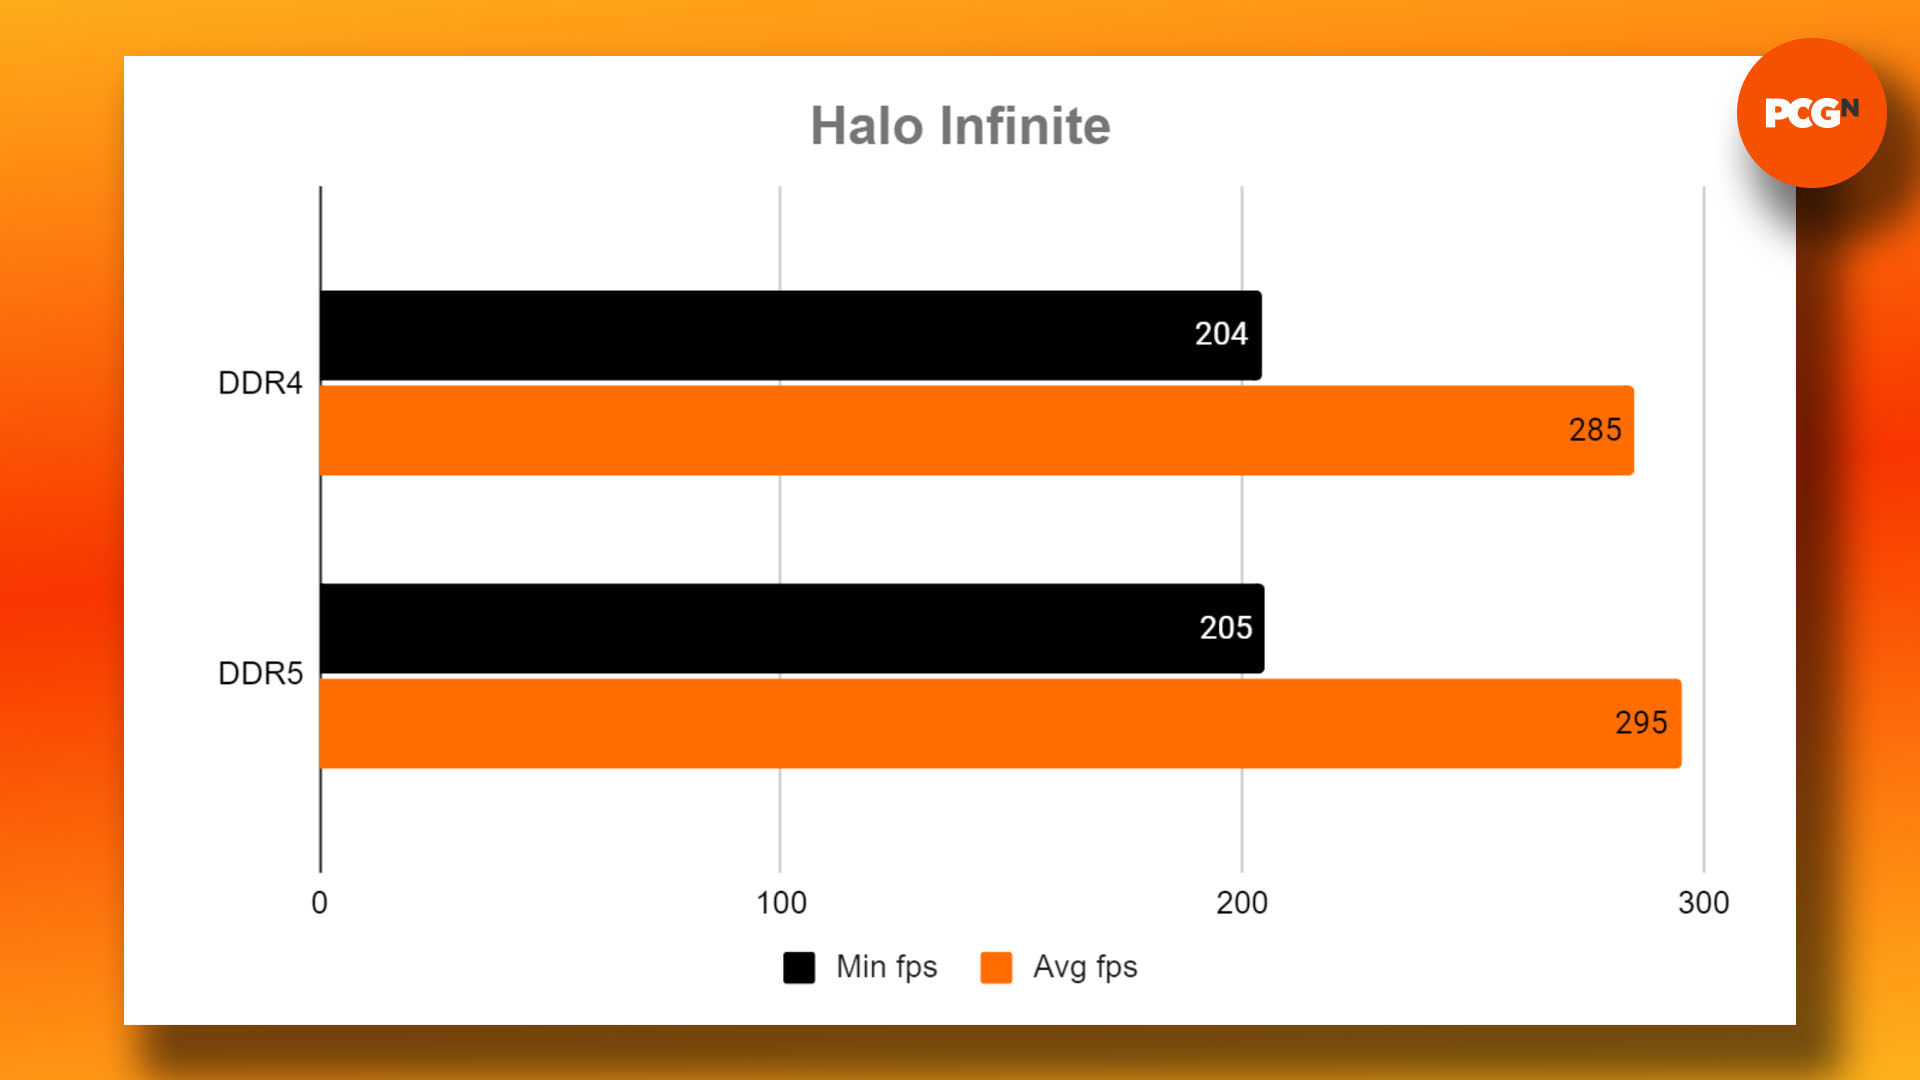 DDR4 vs DDR5 - oyun için hangi RAM satın alınmalı: Halo Infinite kıyaslama sonuçları grafiği